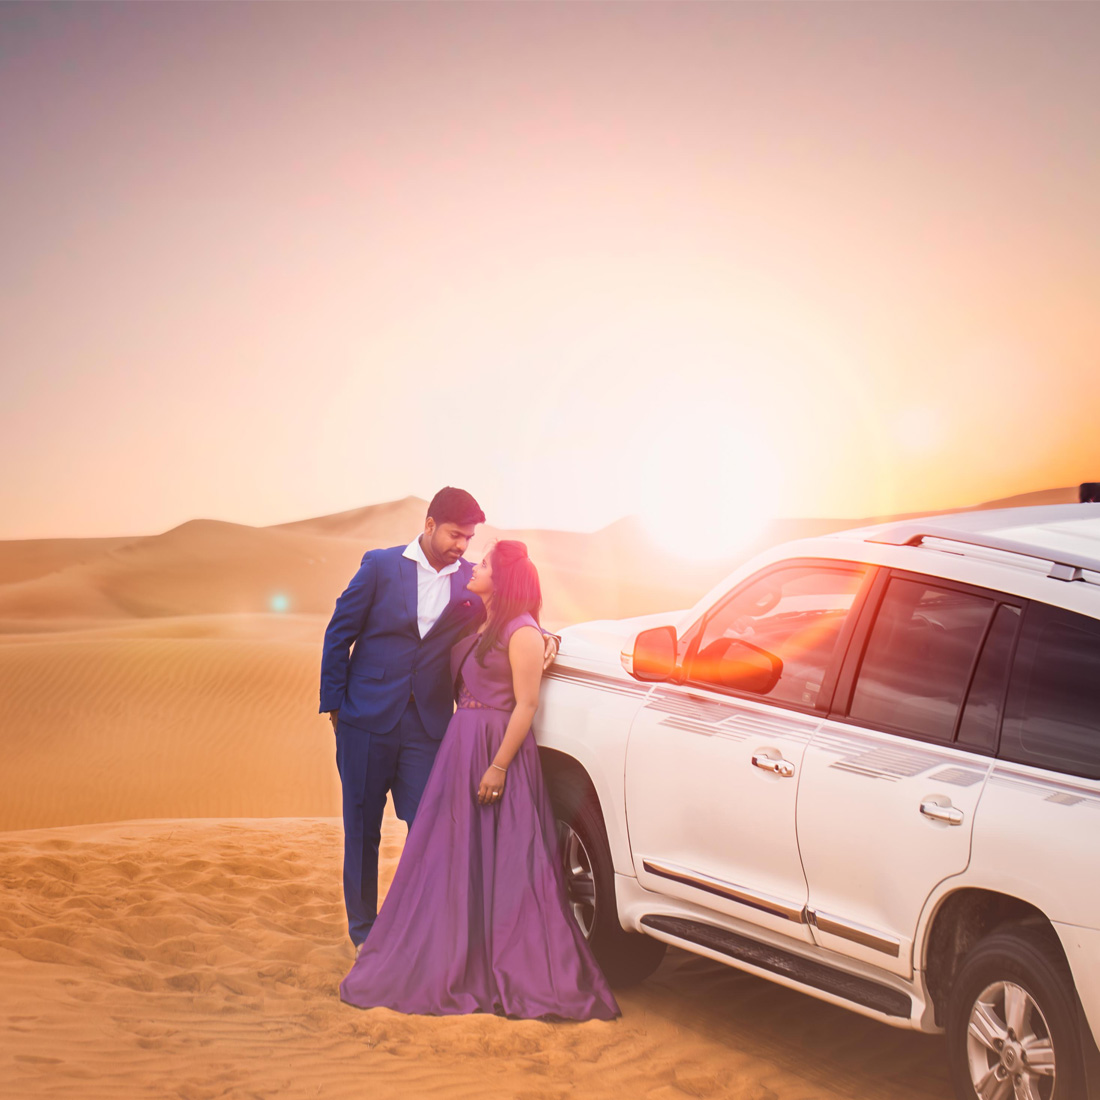 Post wedding photography in dubai desert - Vshoot